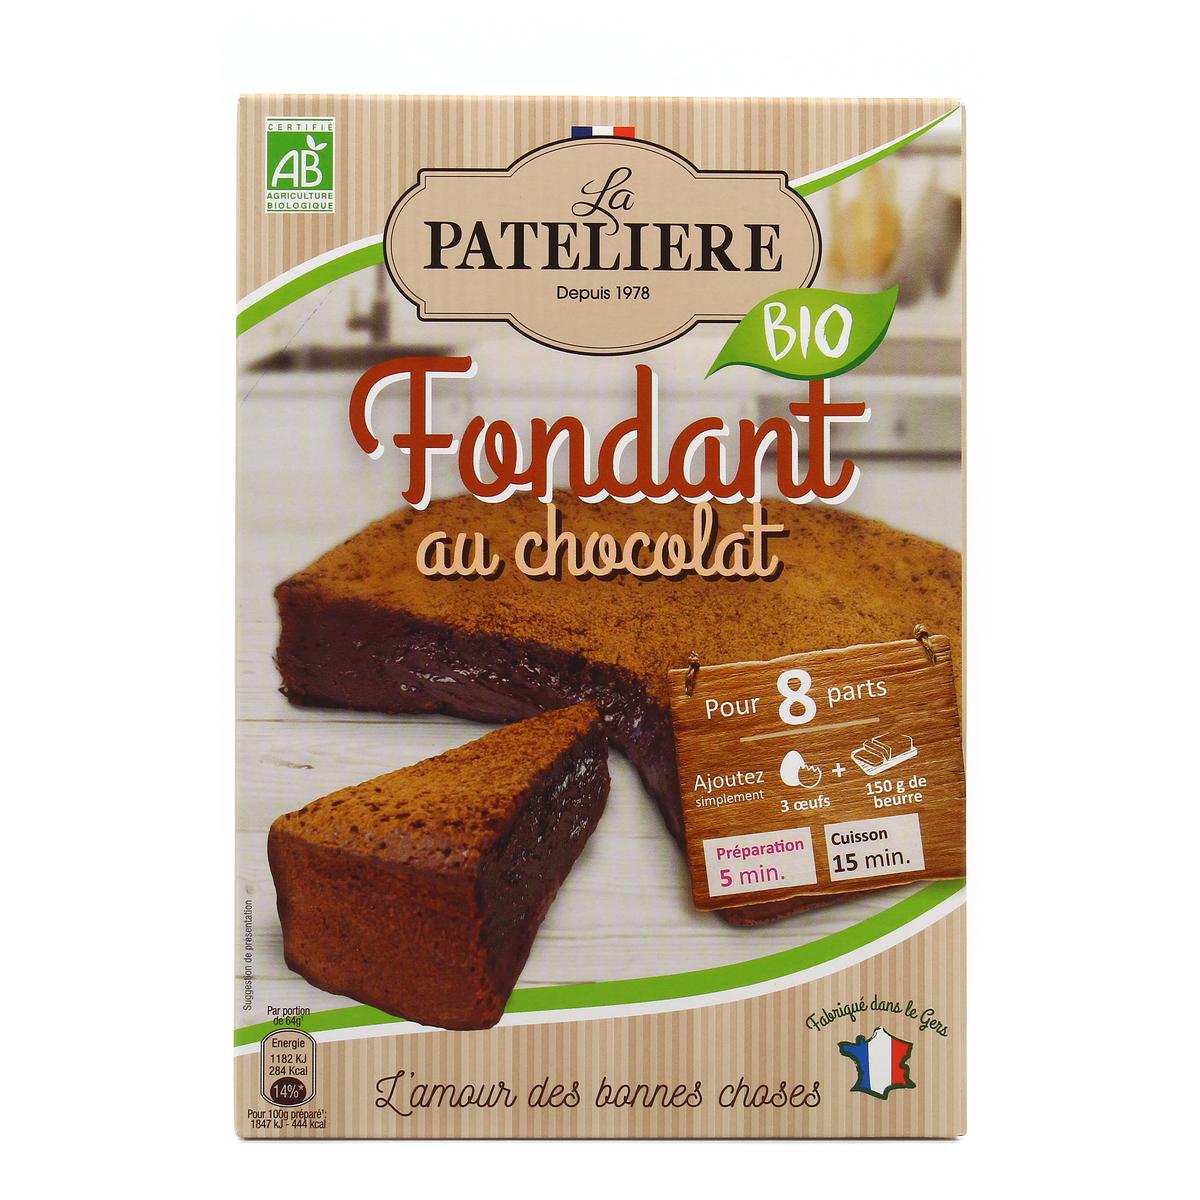 Achat Vente Promotion La Pateliere Fondant Au Chocolat Bio 250g